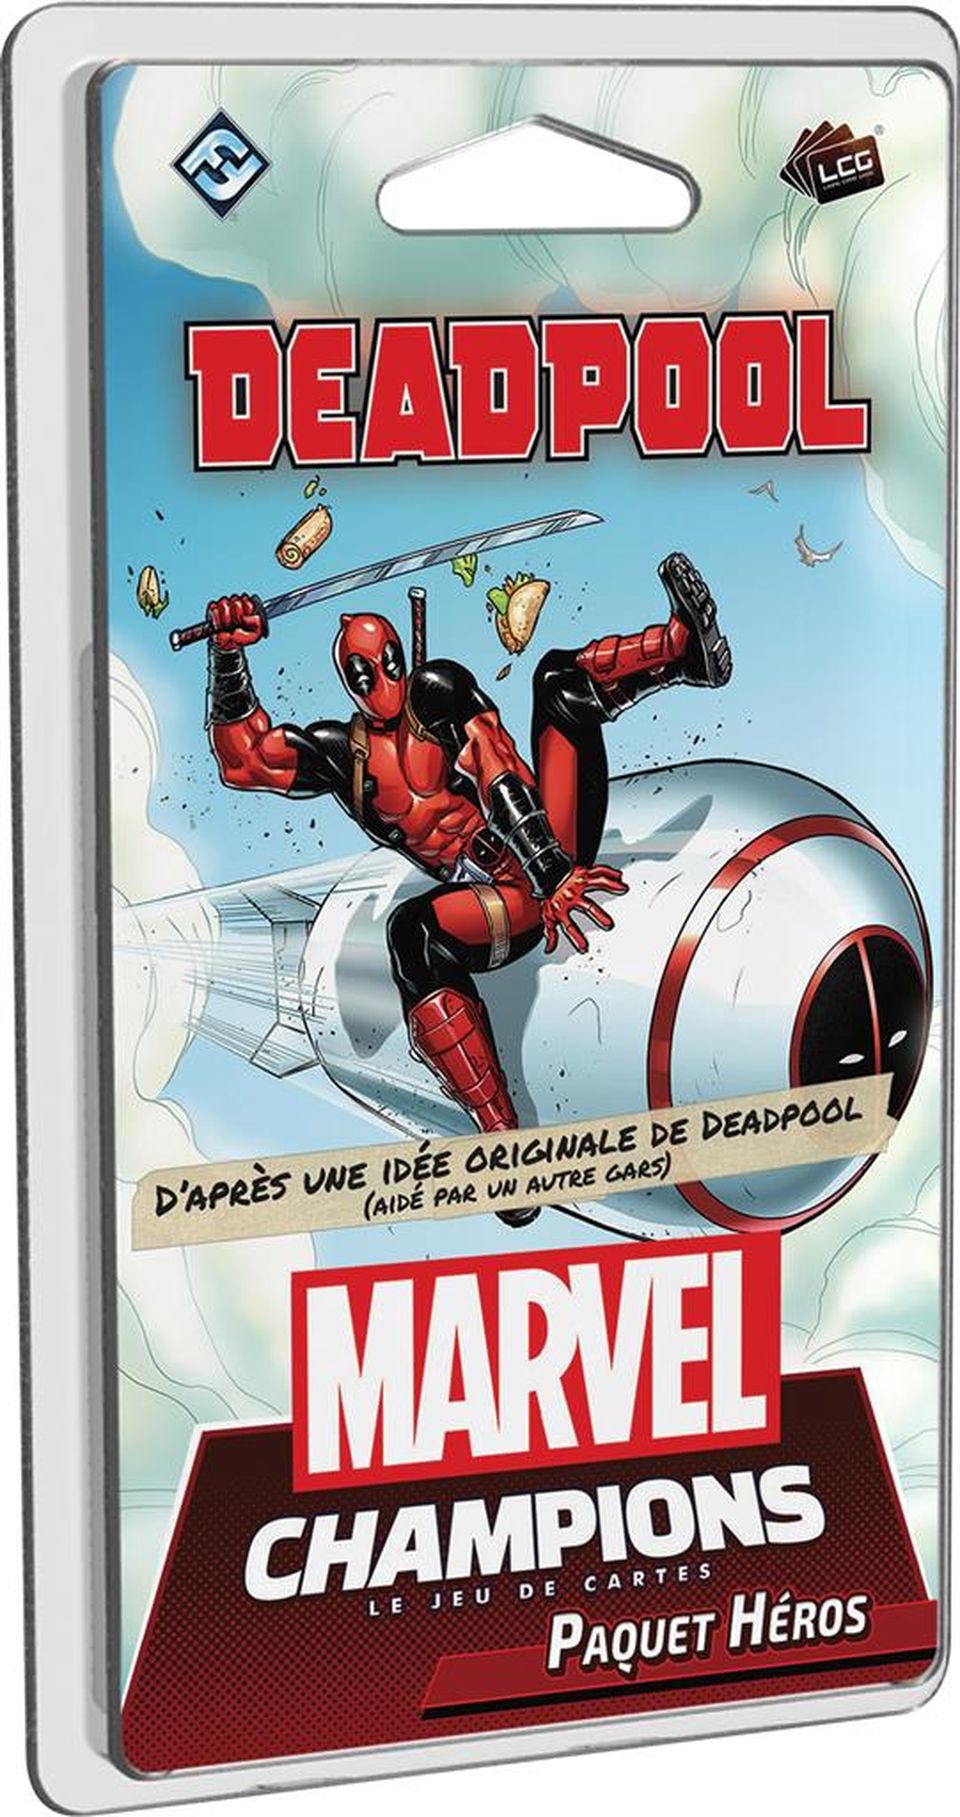 Marvel Champions : Le jeu de cartes - Deadpool (Paquet Héros) image